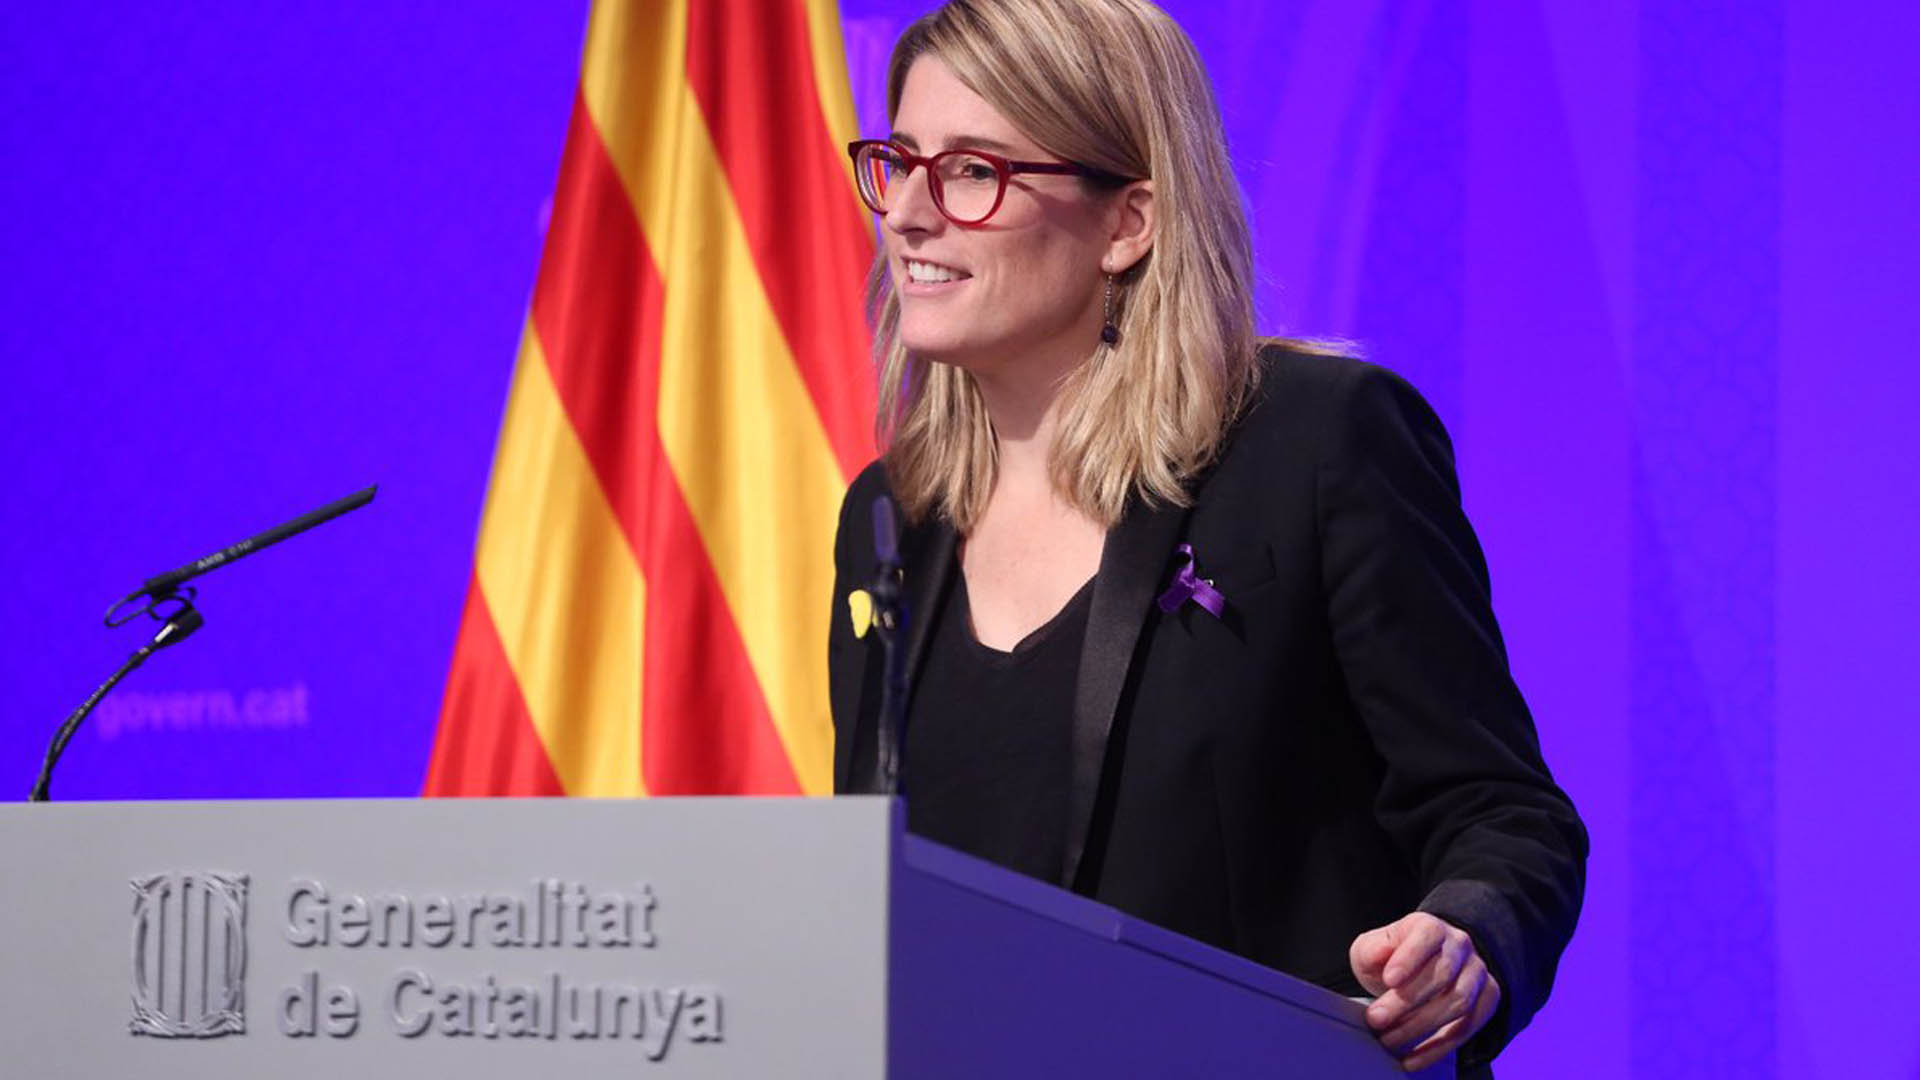 La Generalitat catalana acuerda abrir seis nuevas delegaciones en el extranjero